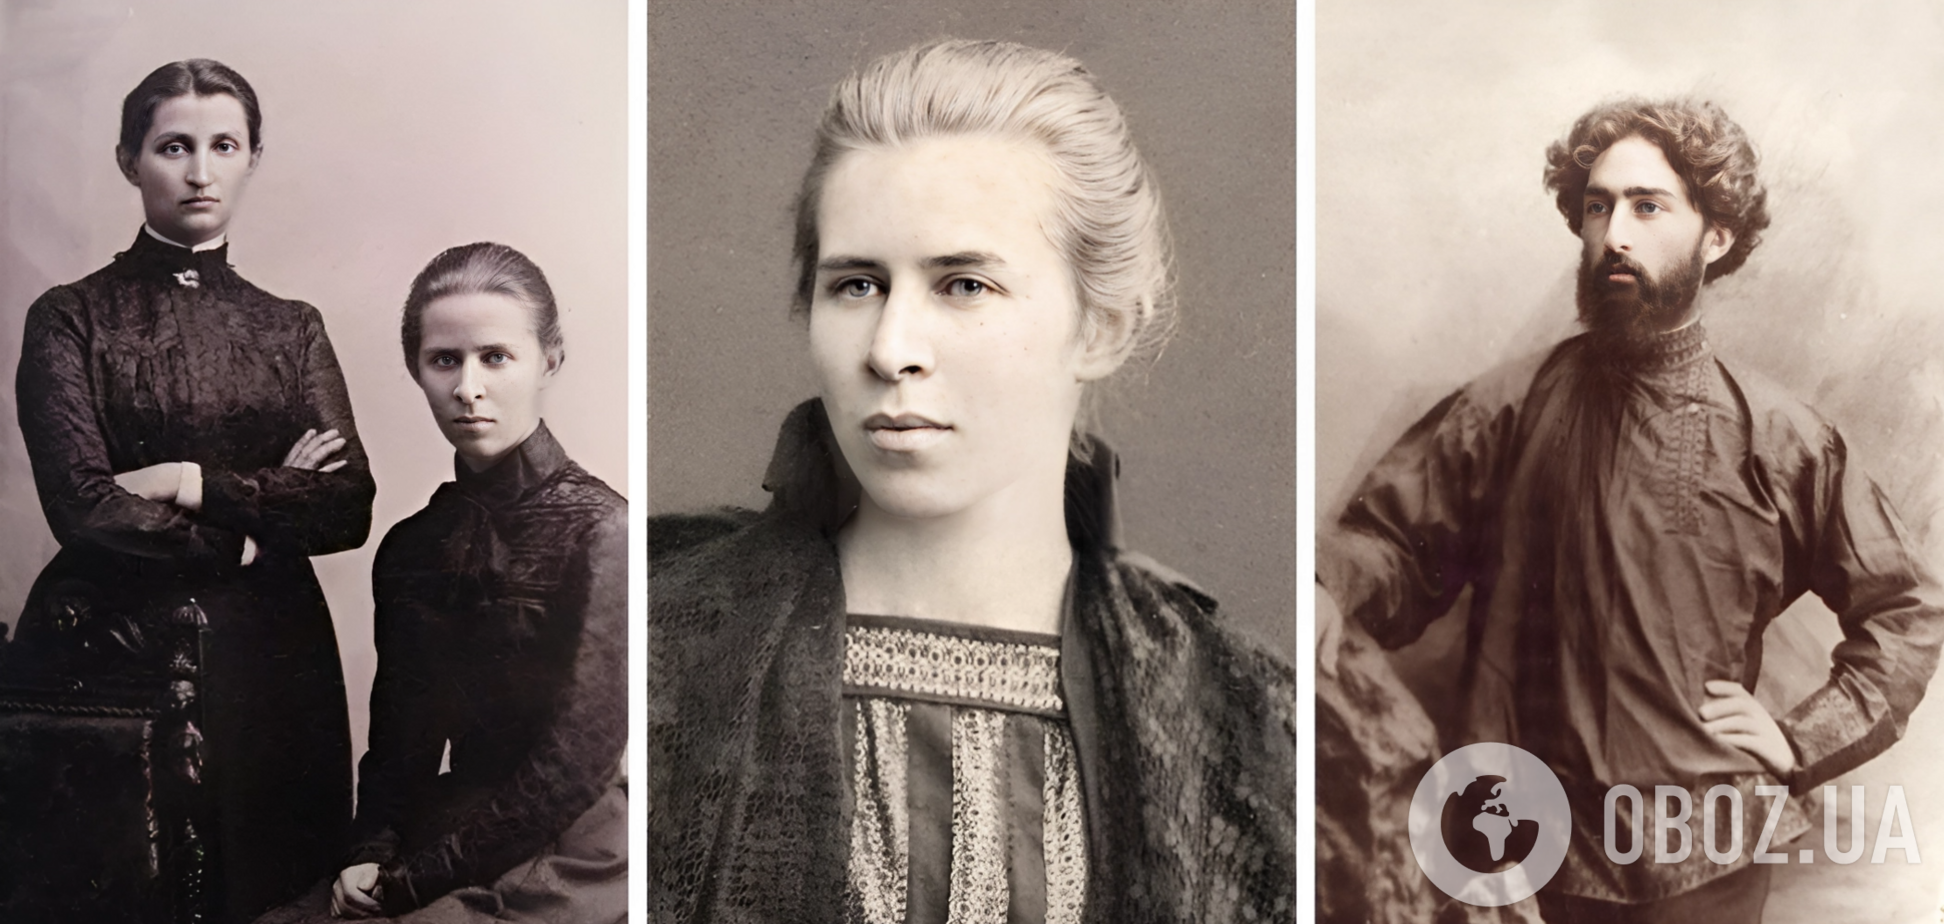 Зради, розбите серце і почуття до жінки: 5 історій кохання Лесі Українки, які породили геніальні твори